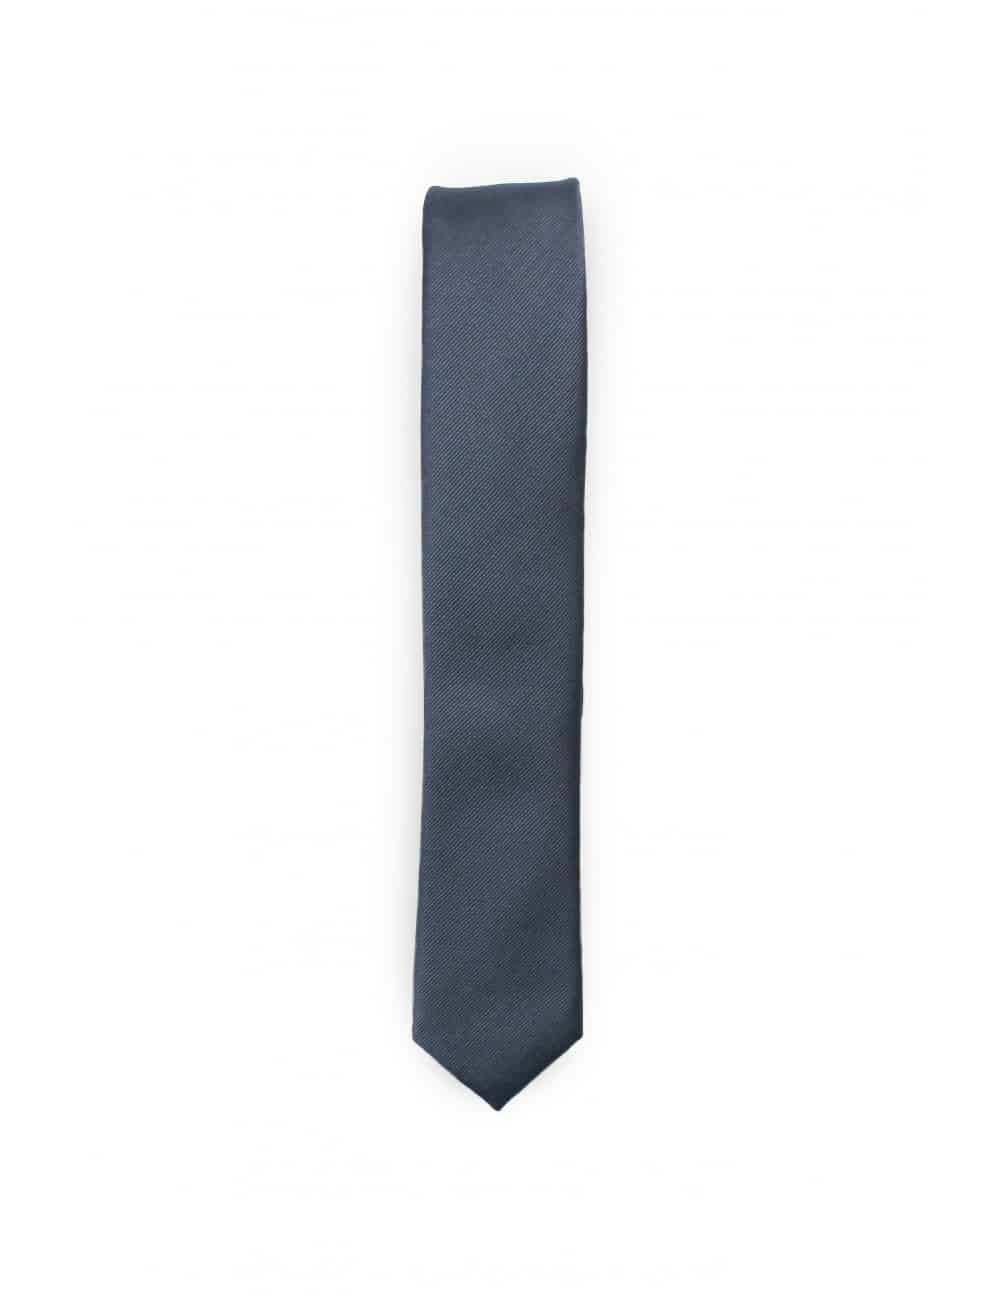 Solid Dark Silver Woven Necktie NT24.7